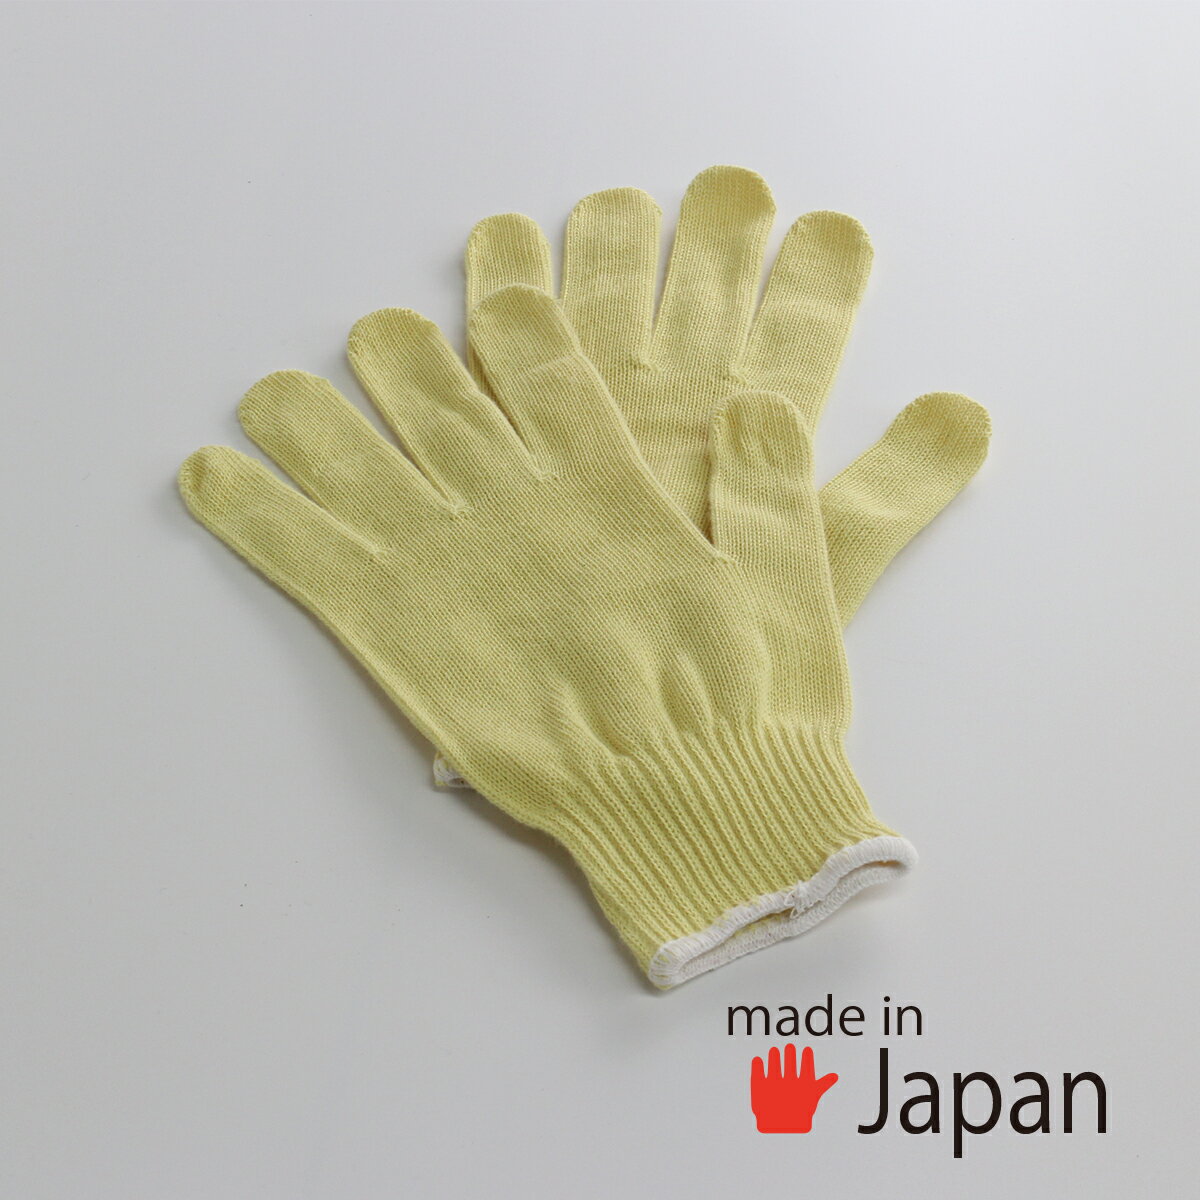 【アラミド手袋】 日本製 軍手 最強 耐切創 安全 作業手袋